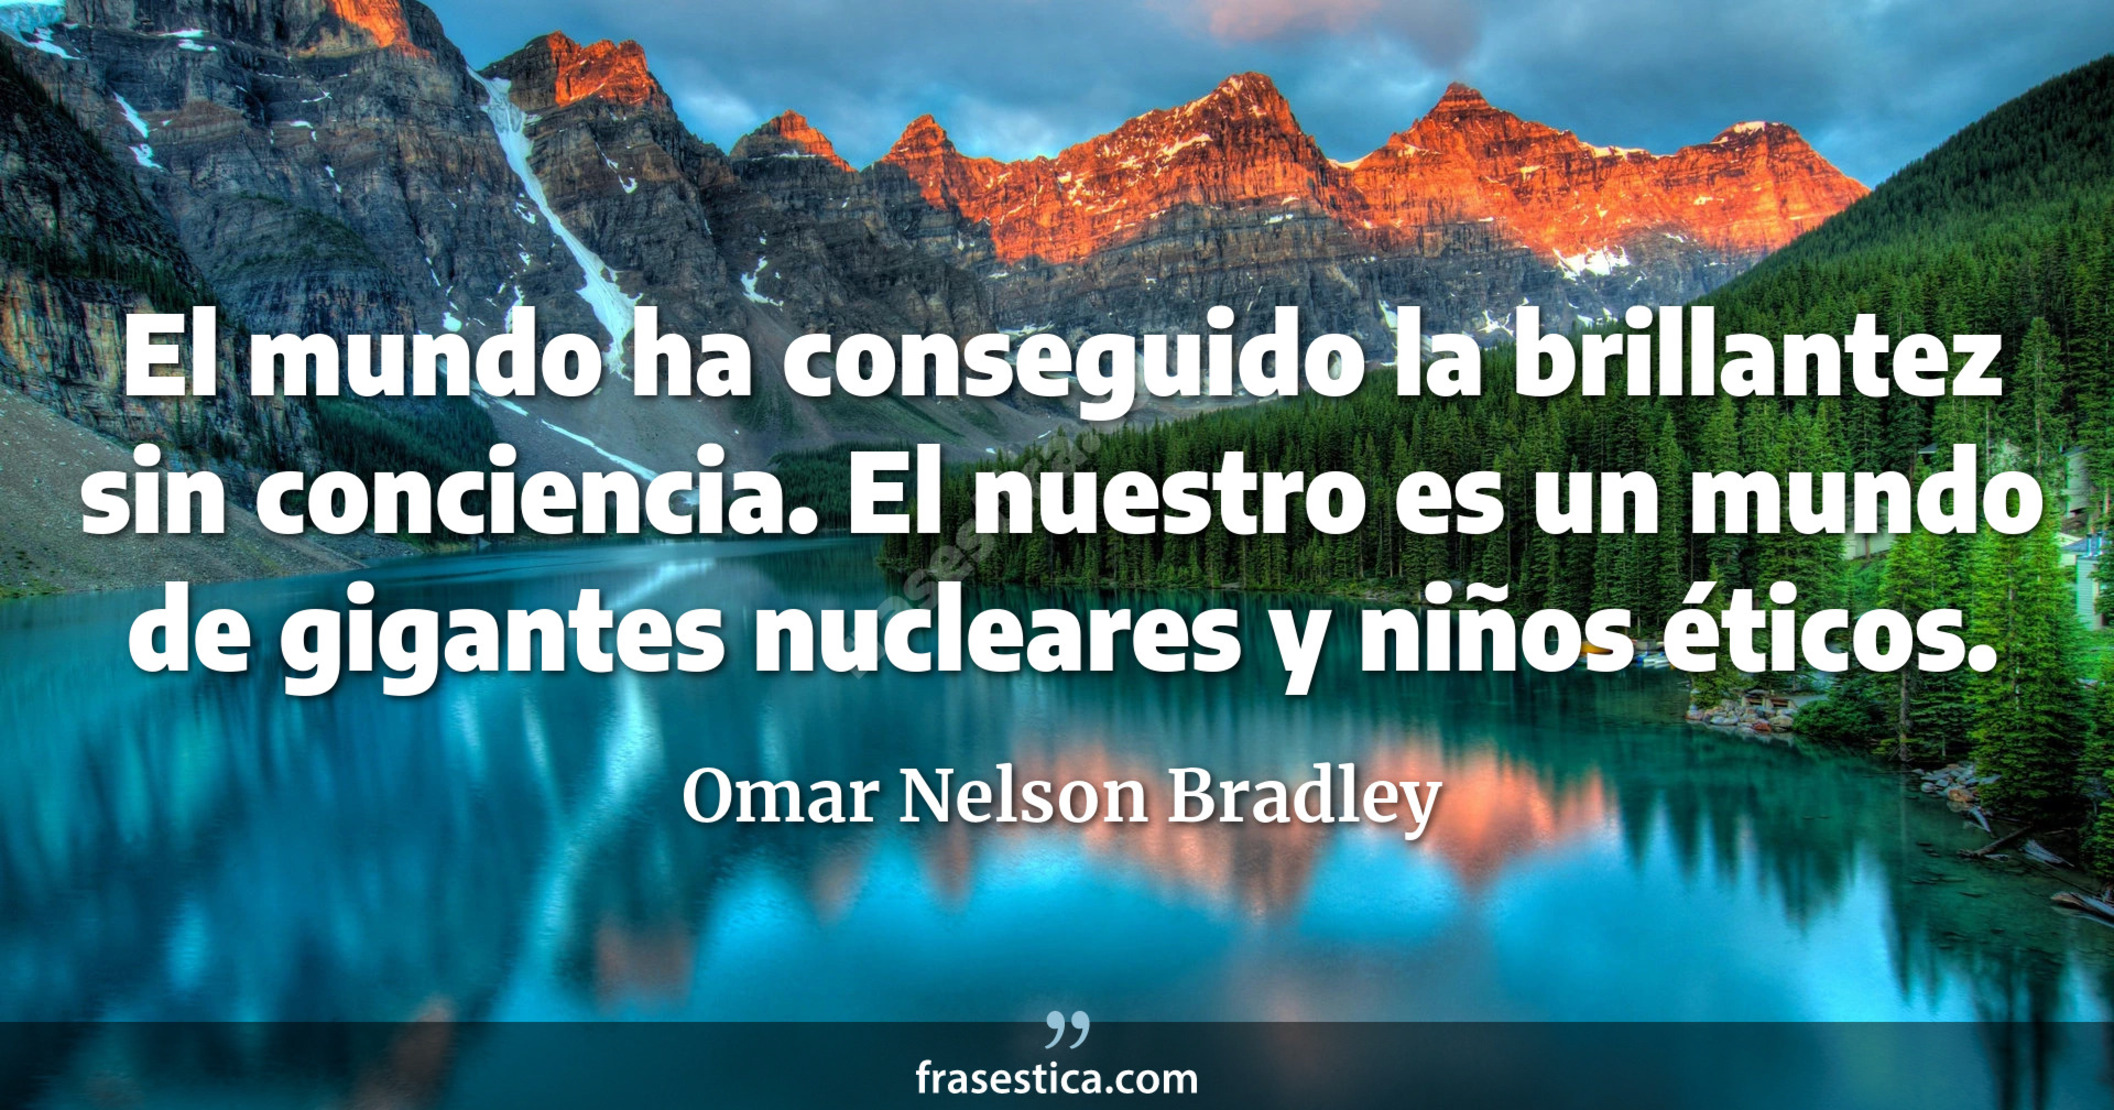 El mundo ha conseguido la brillantez sin conciencia. El nuestro es un mundo de gigantes nucleares y niños éticos. - Omar Nelson Bradley